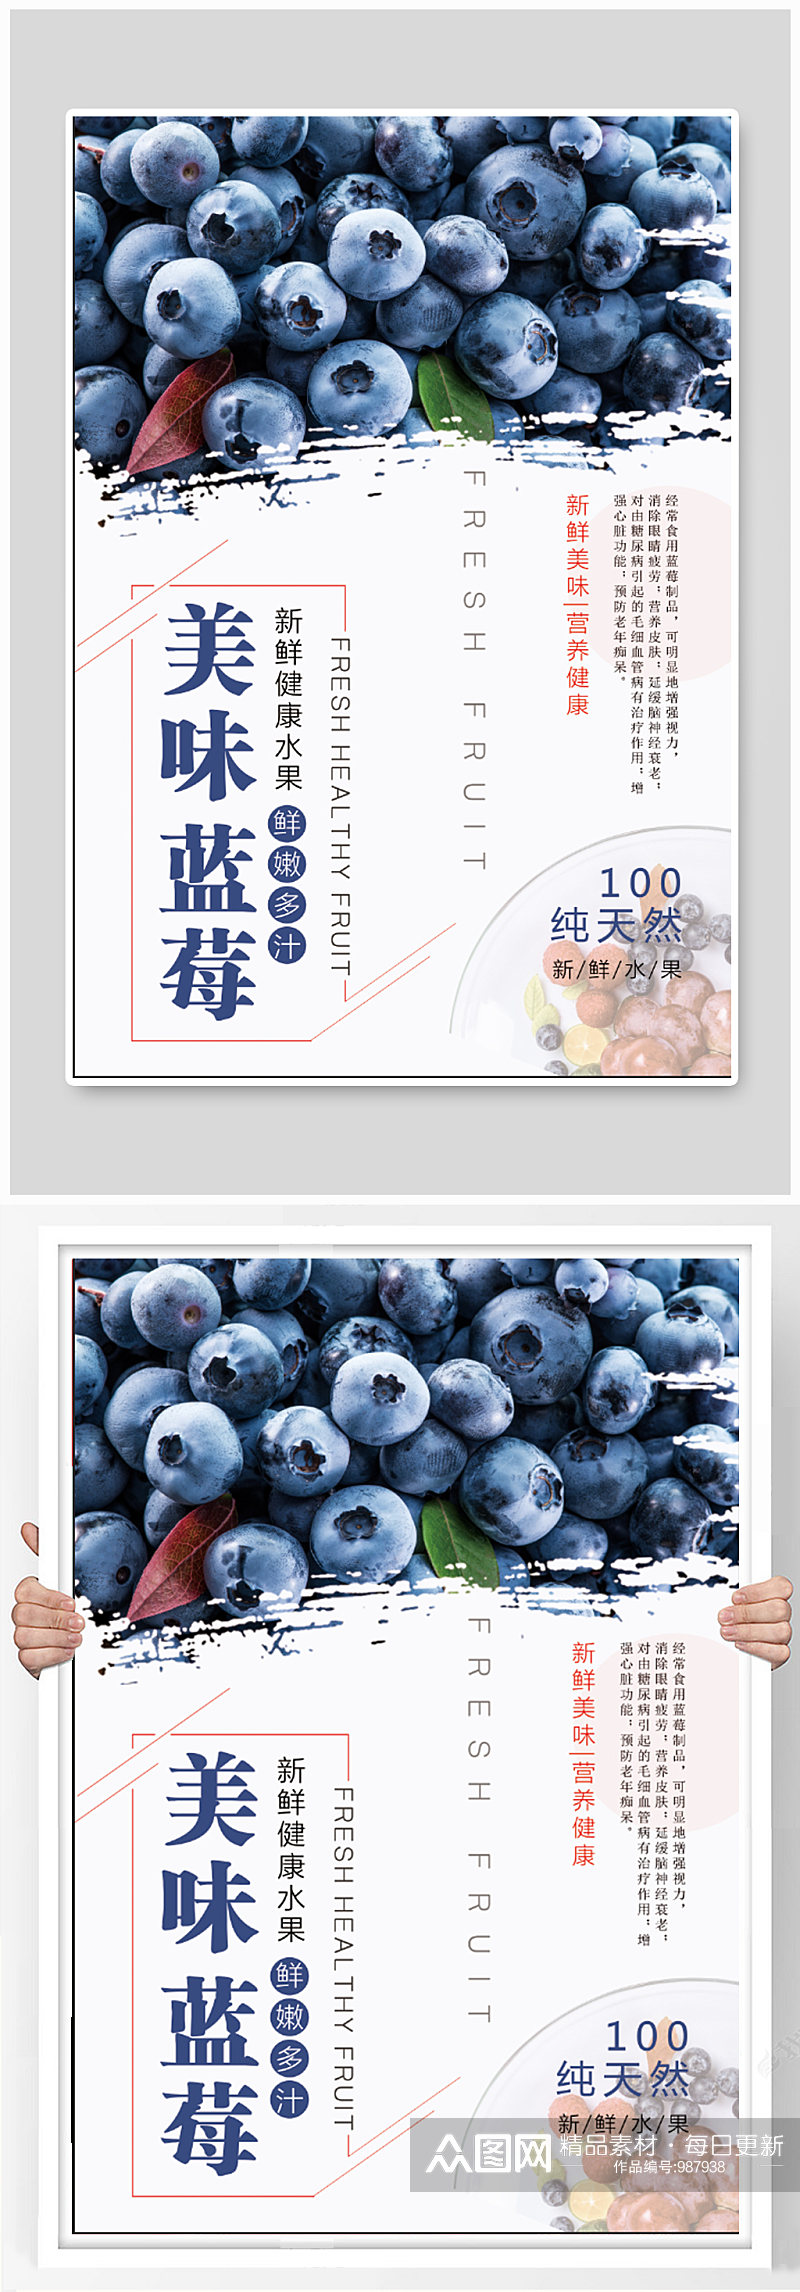 美味蓝莓水果超市海报素材